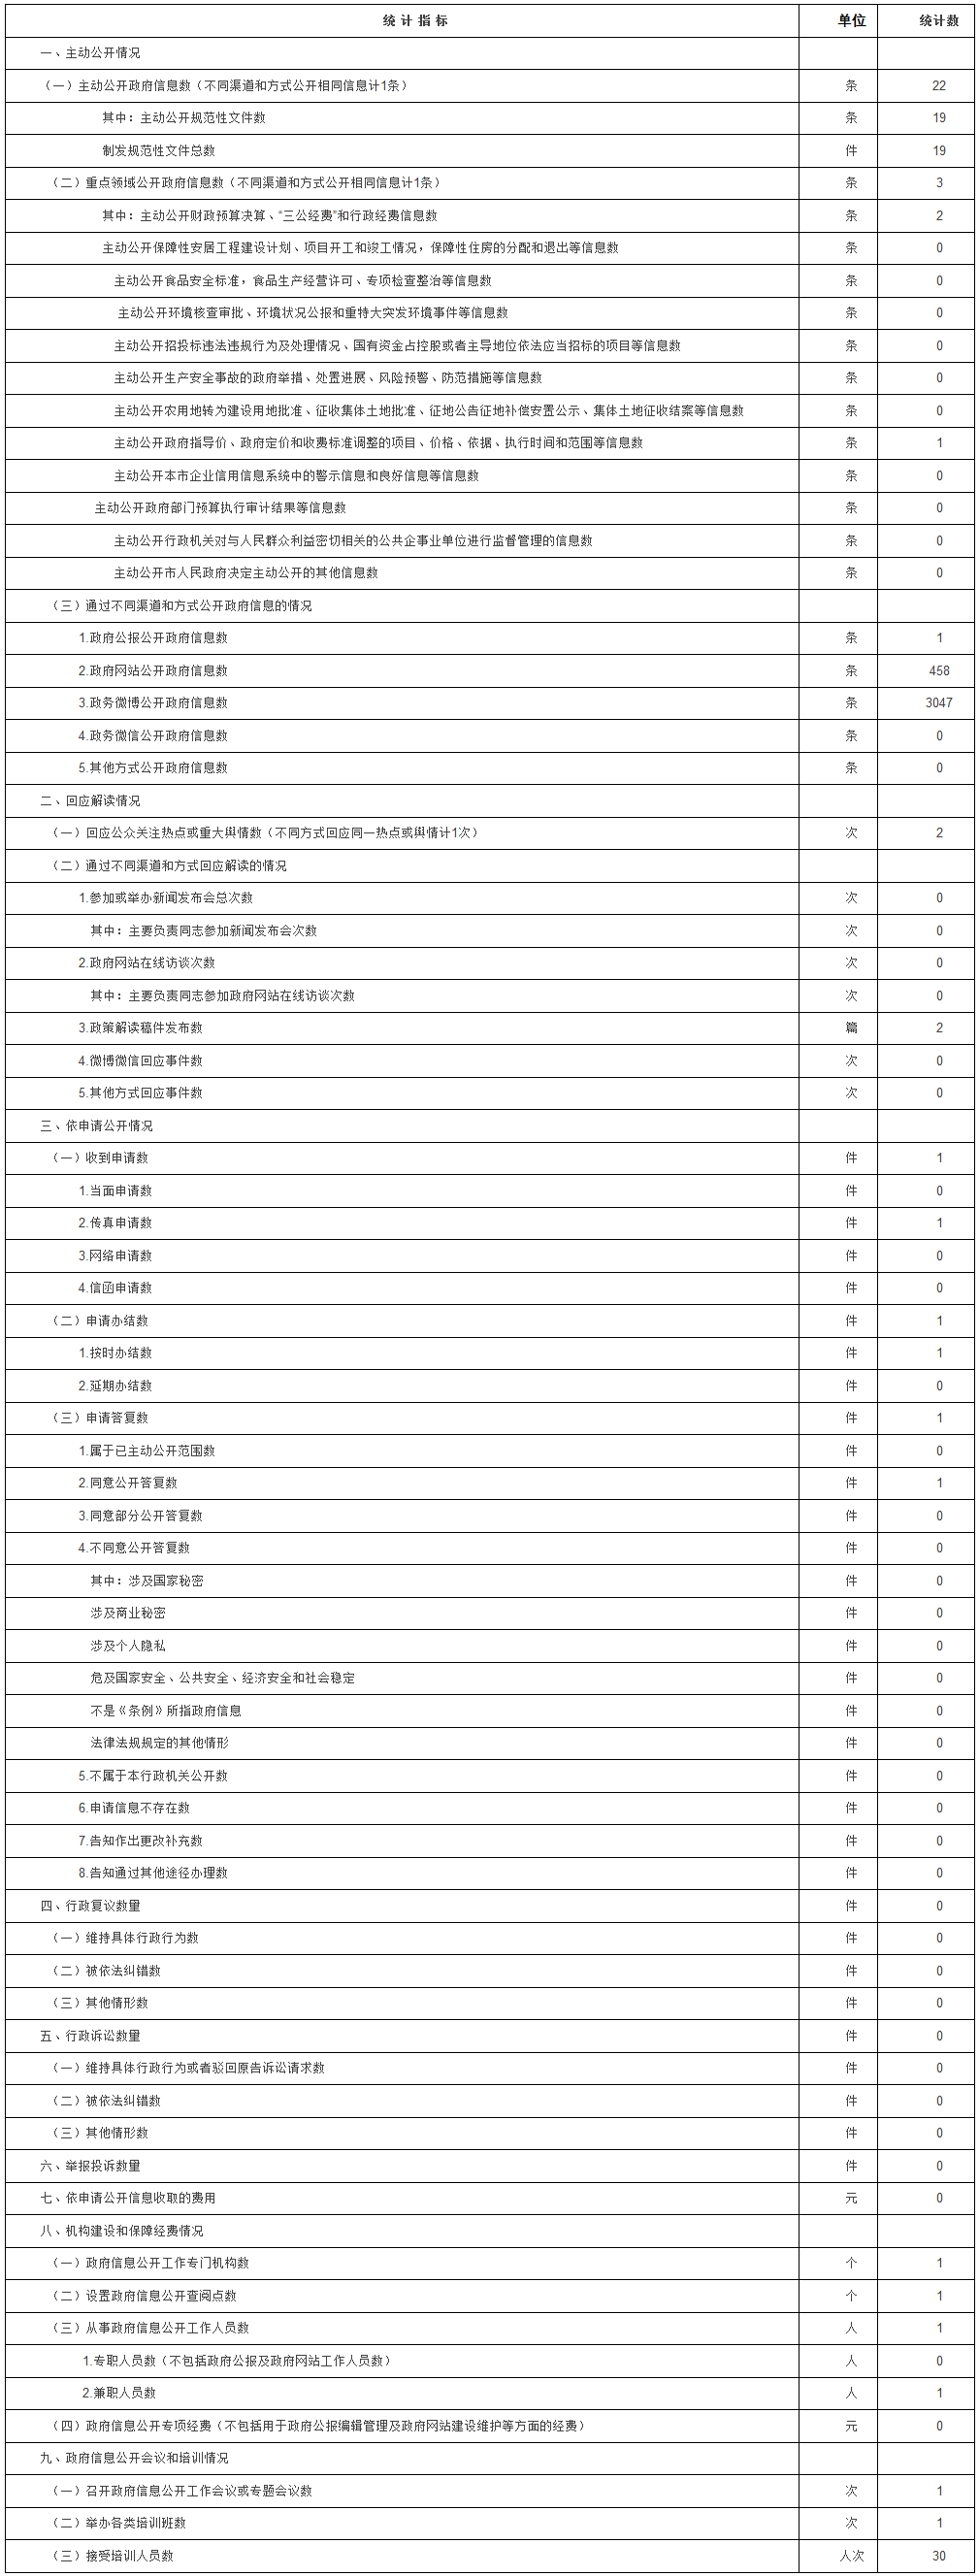 北京市粮食局政府信息公开情况统计表（2017年度）